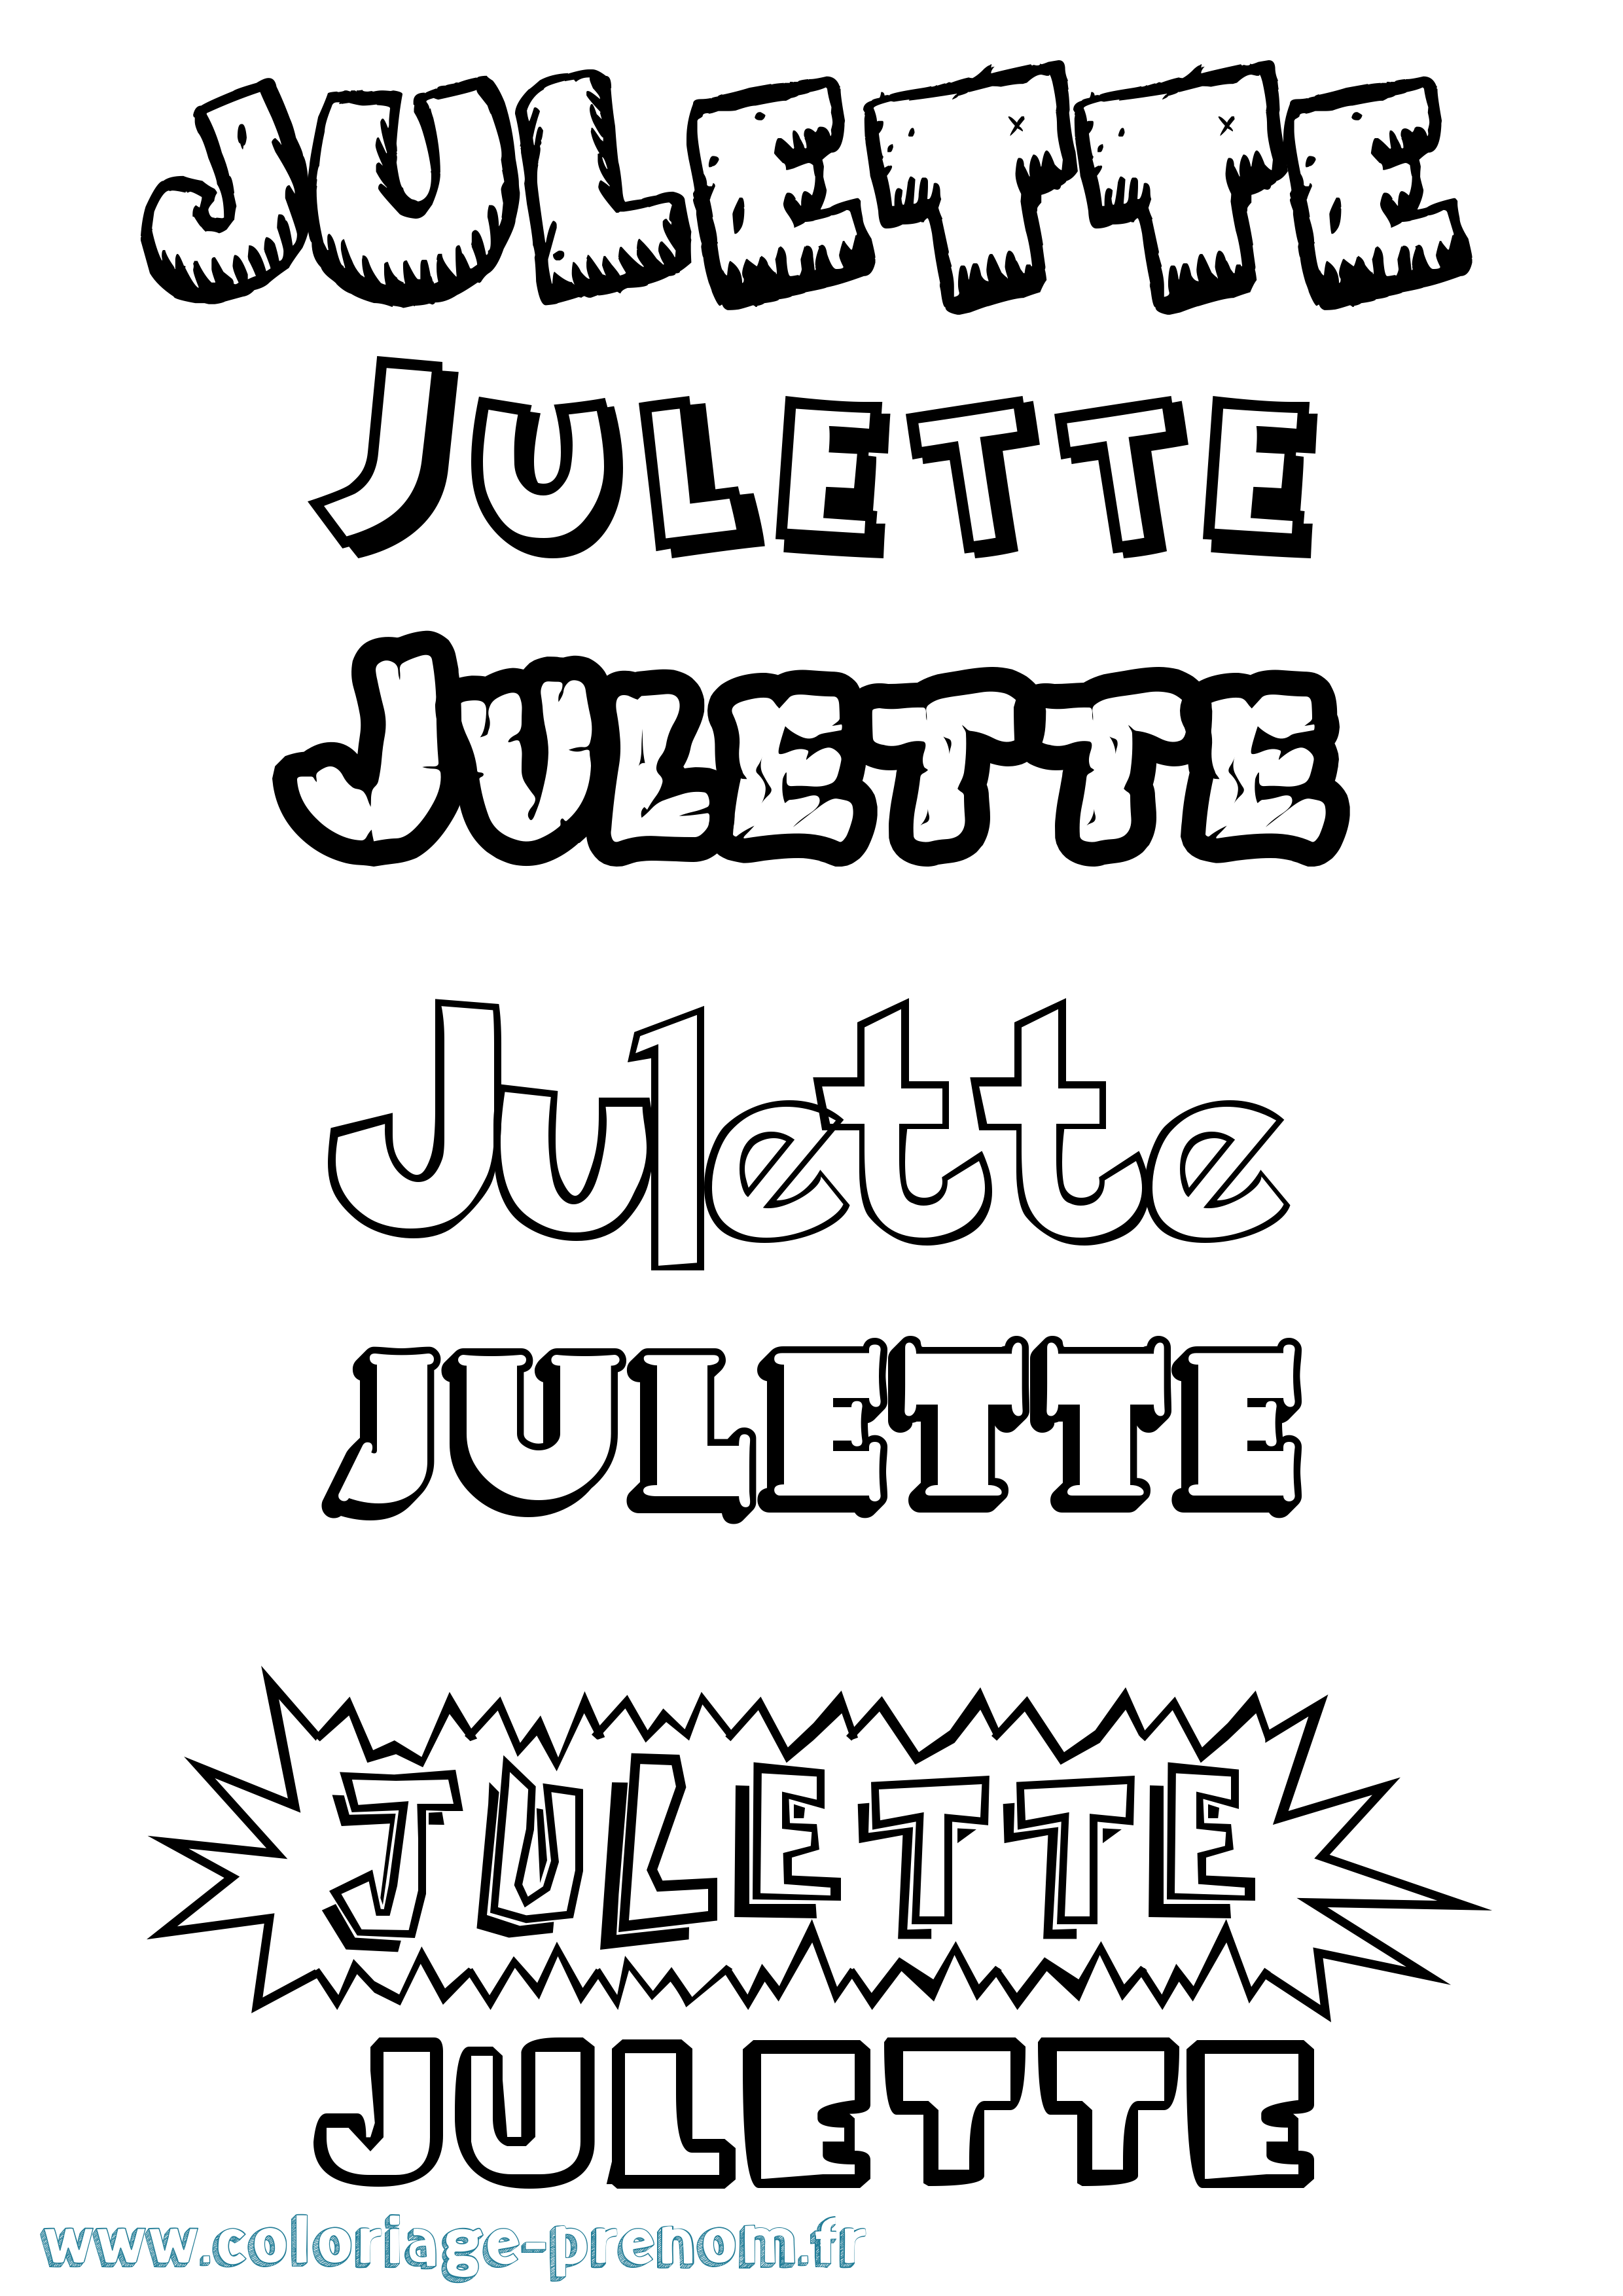 Coloriage prénom Julette Dessin Animé